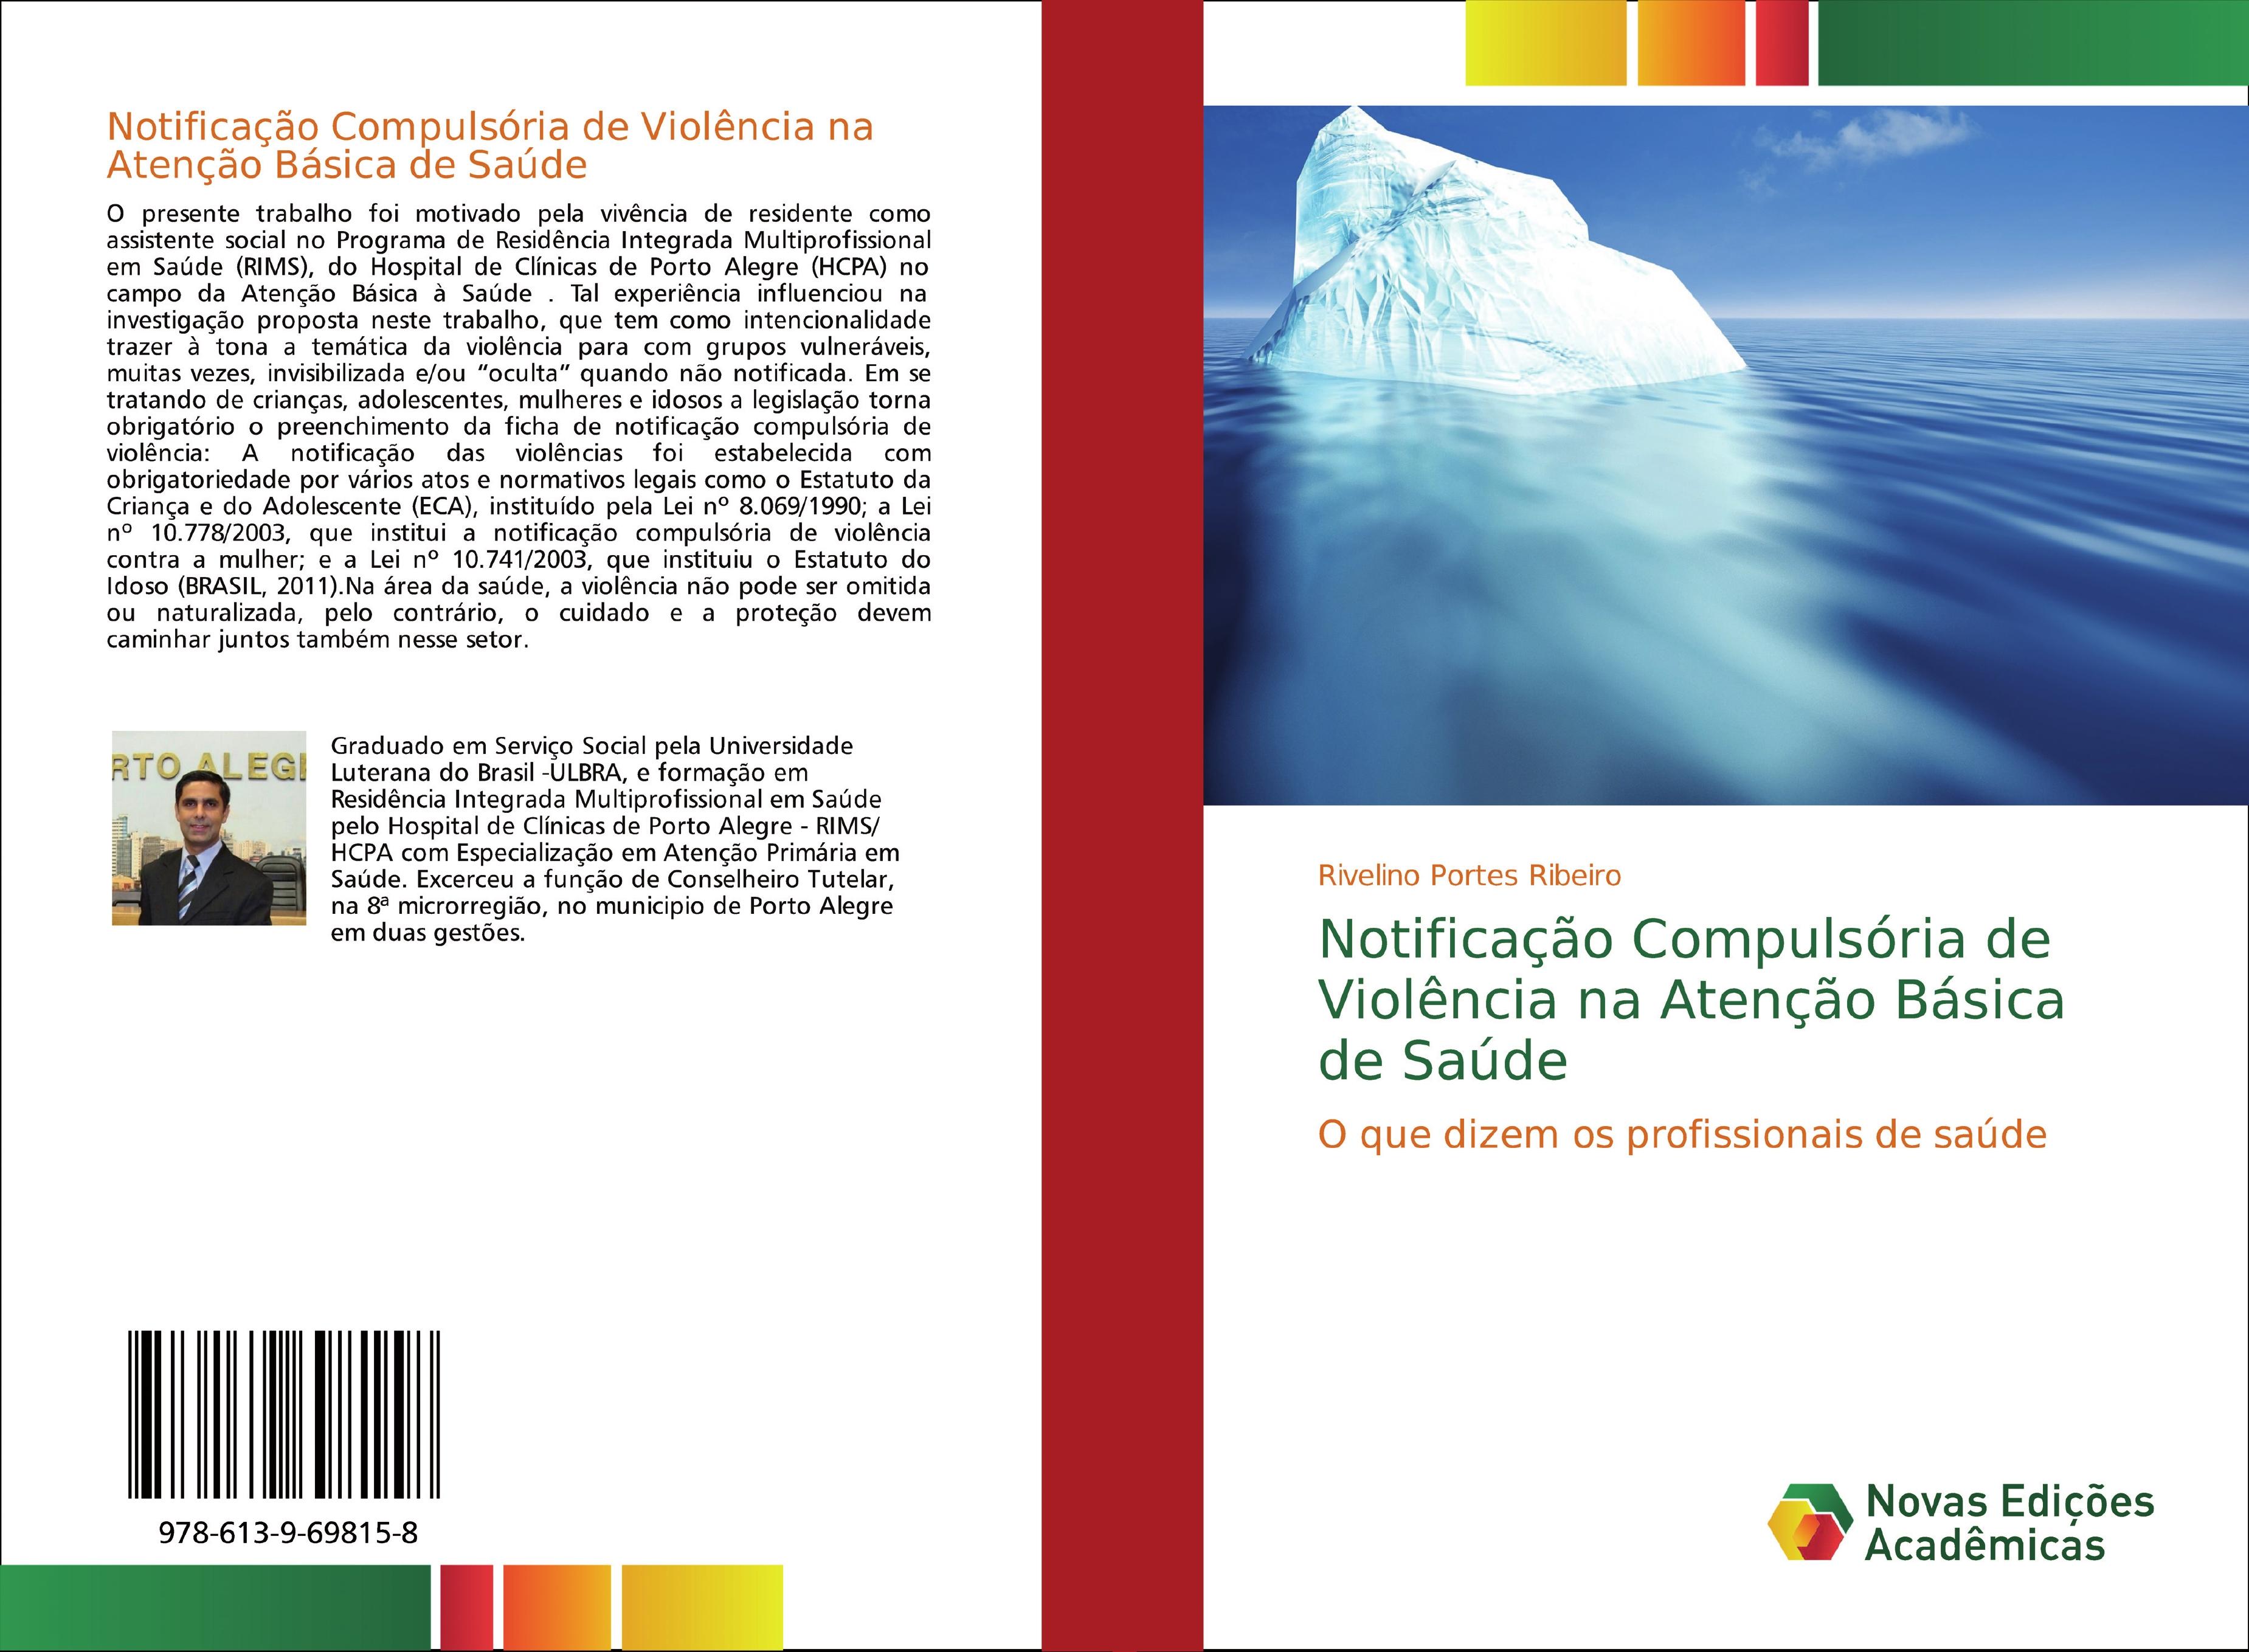 Notificação Compulsória de Violência na Atenção Básica de Saúde - Rivelino Portes Ribeiro